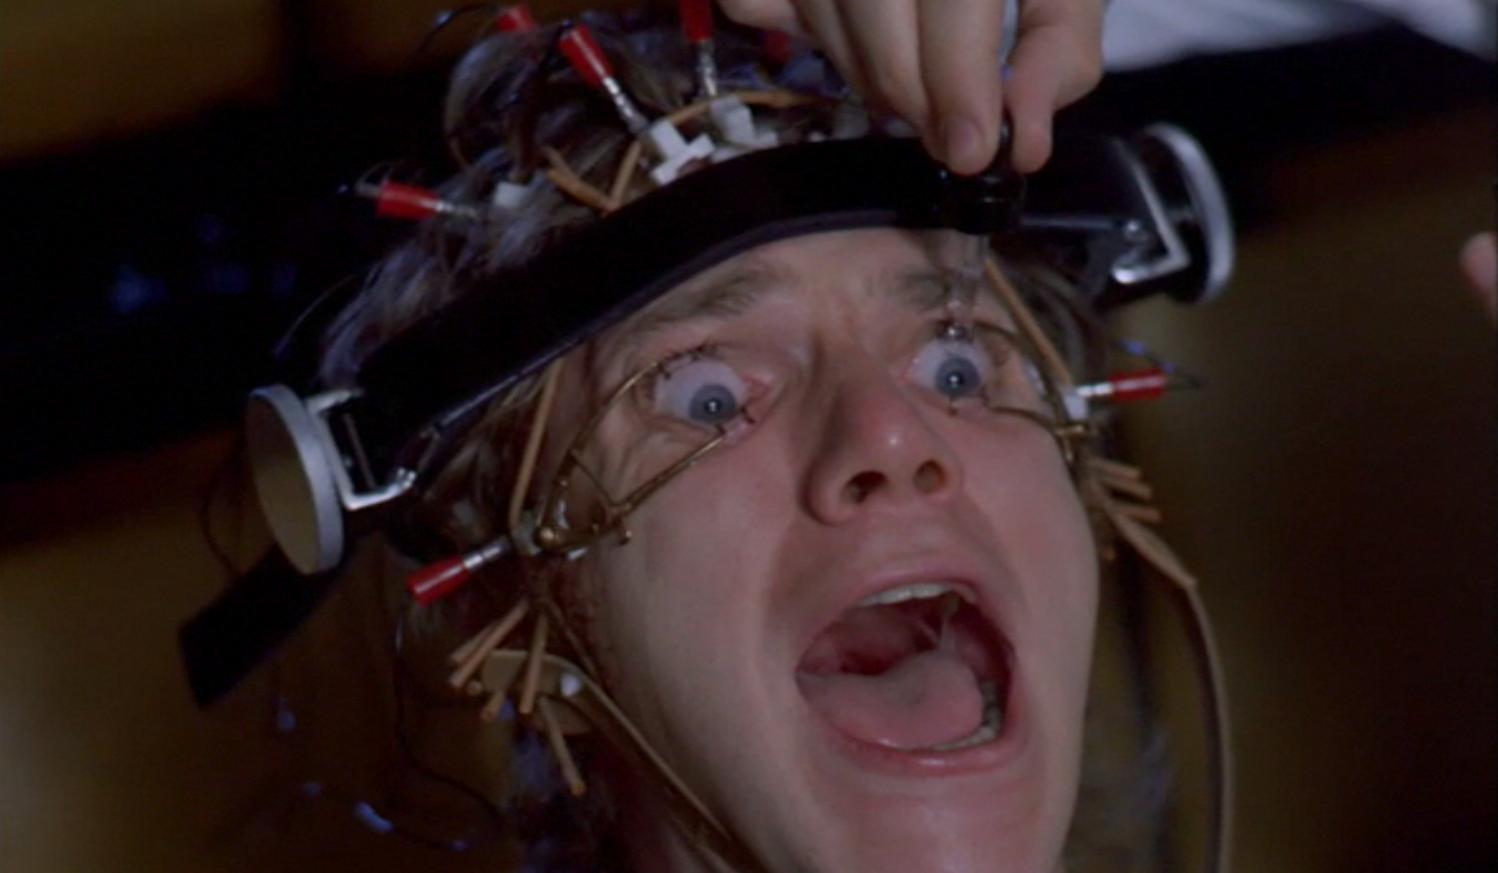 Cena do filme de Stanely Kubrik, A laranja mecânica (1972). O jovem Alex (Malcolm McDowell) sofre sua lavagem cerebral após desafiar o sistema e ser capturado pelo Estado.